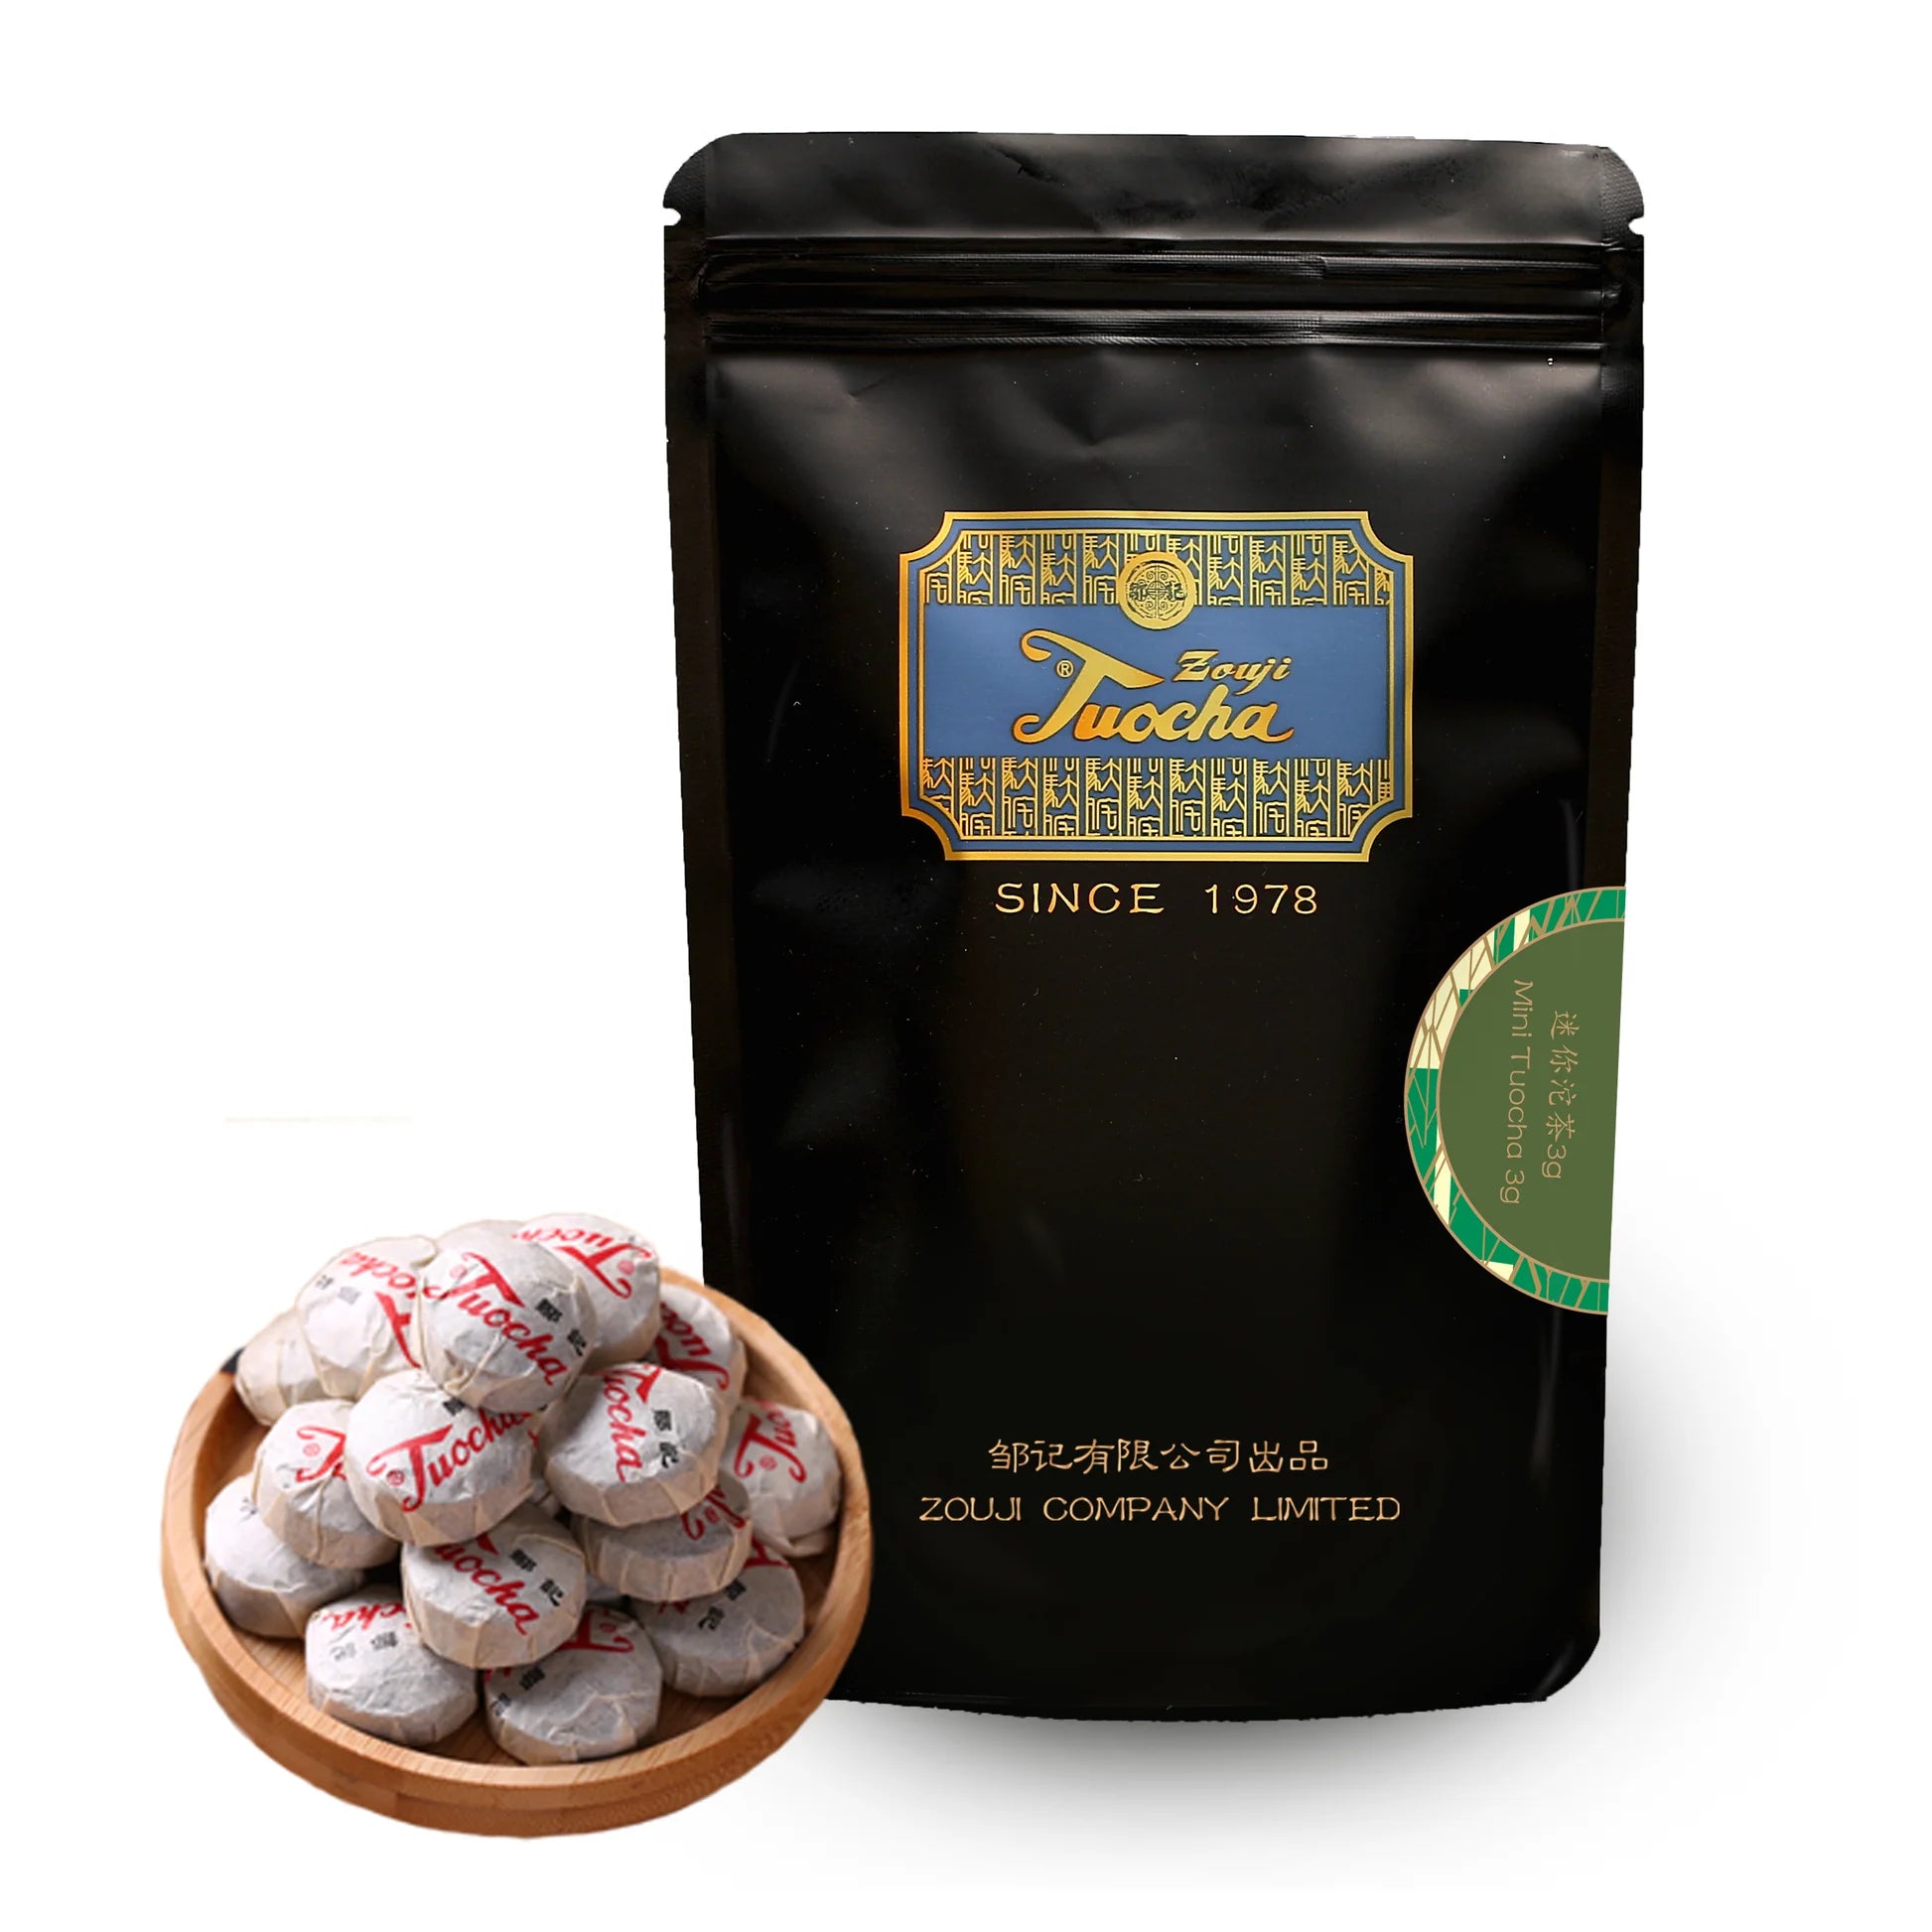 Tè Nero Zouji Tuocha Artigianale 100% Organico Origine Cina - Confezione Toucha Mini 80g